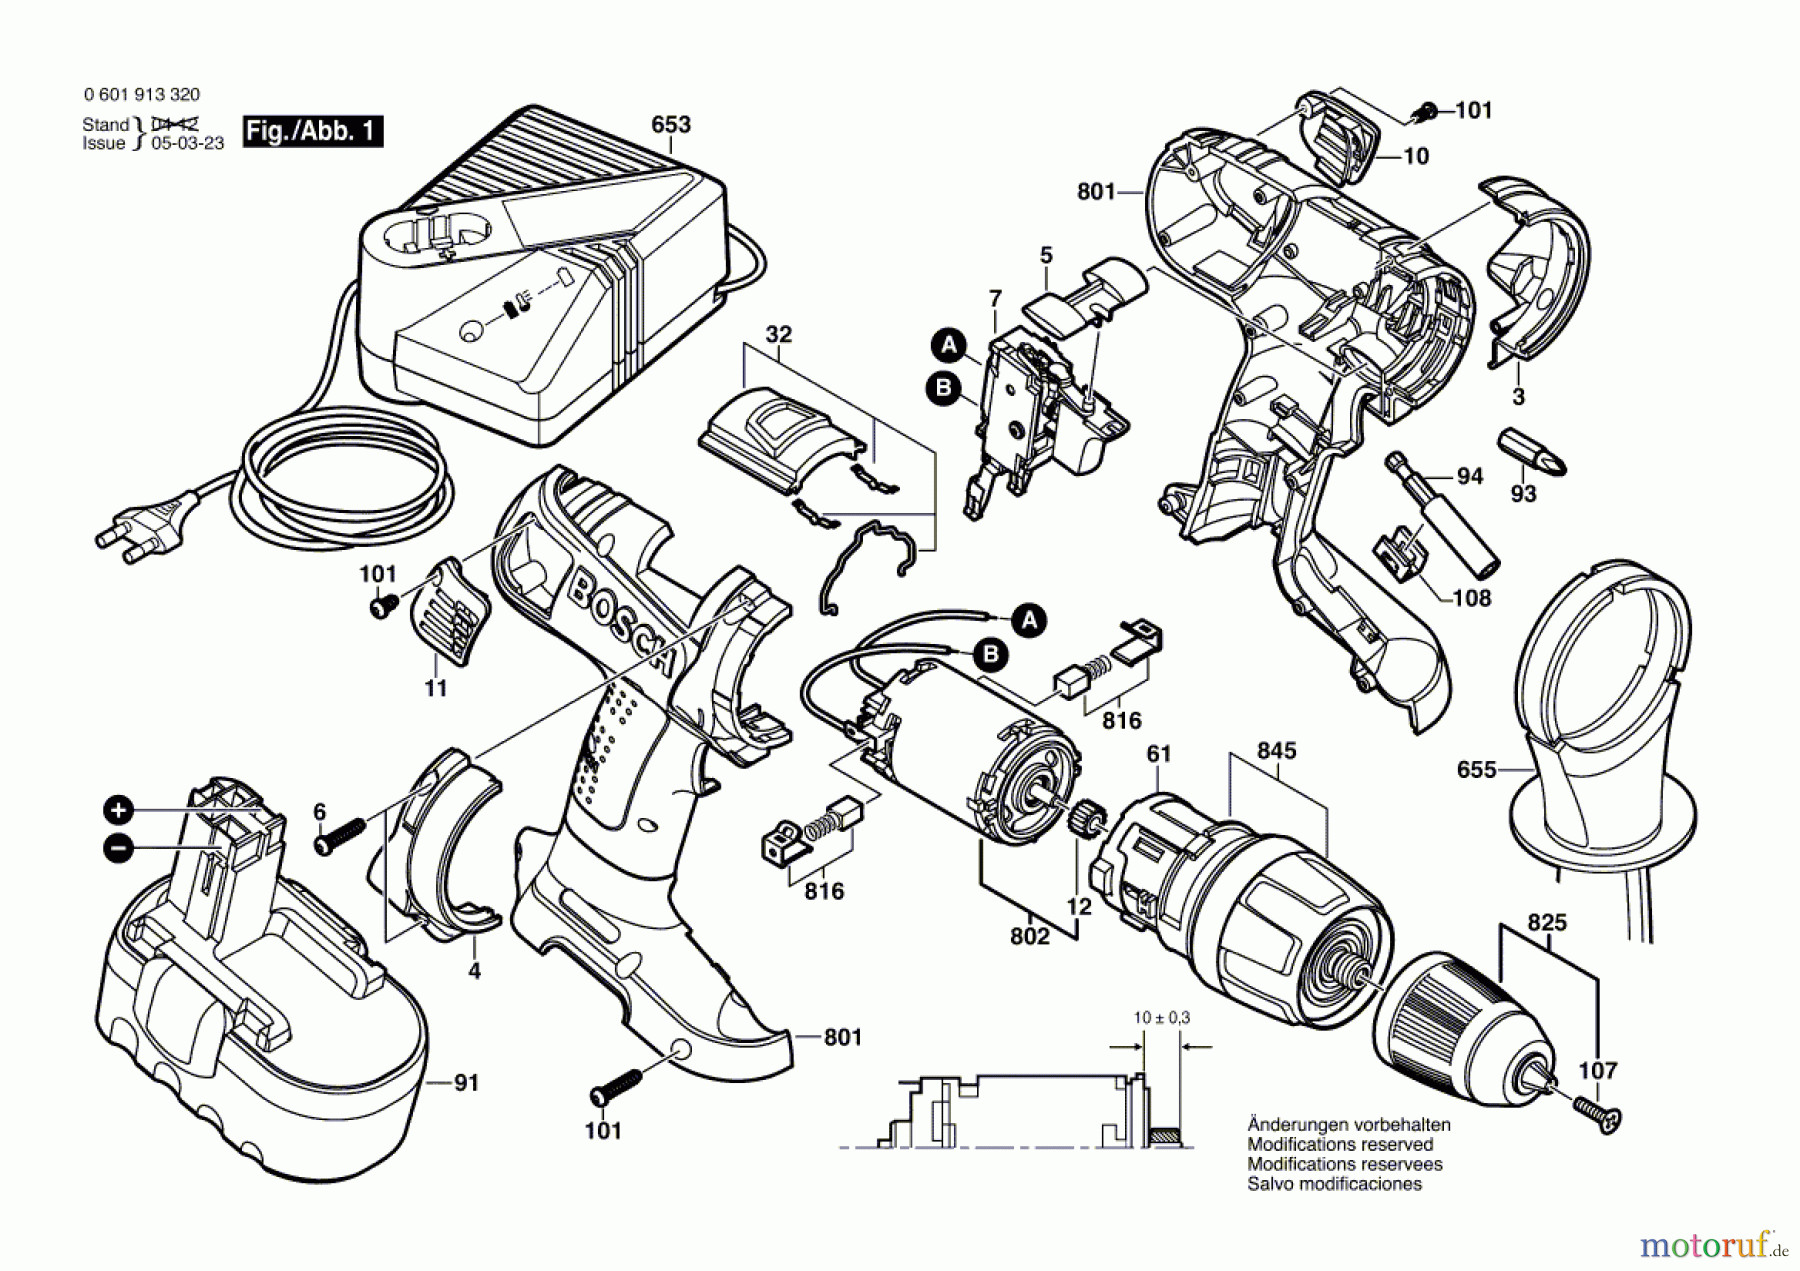  Bosch Akku Werkzeug Akku-Schlagbohrmaschine GSB 18 VE-2 Seite 1